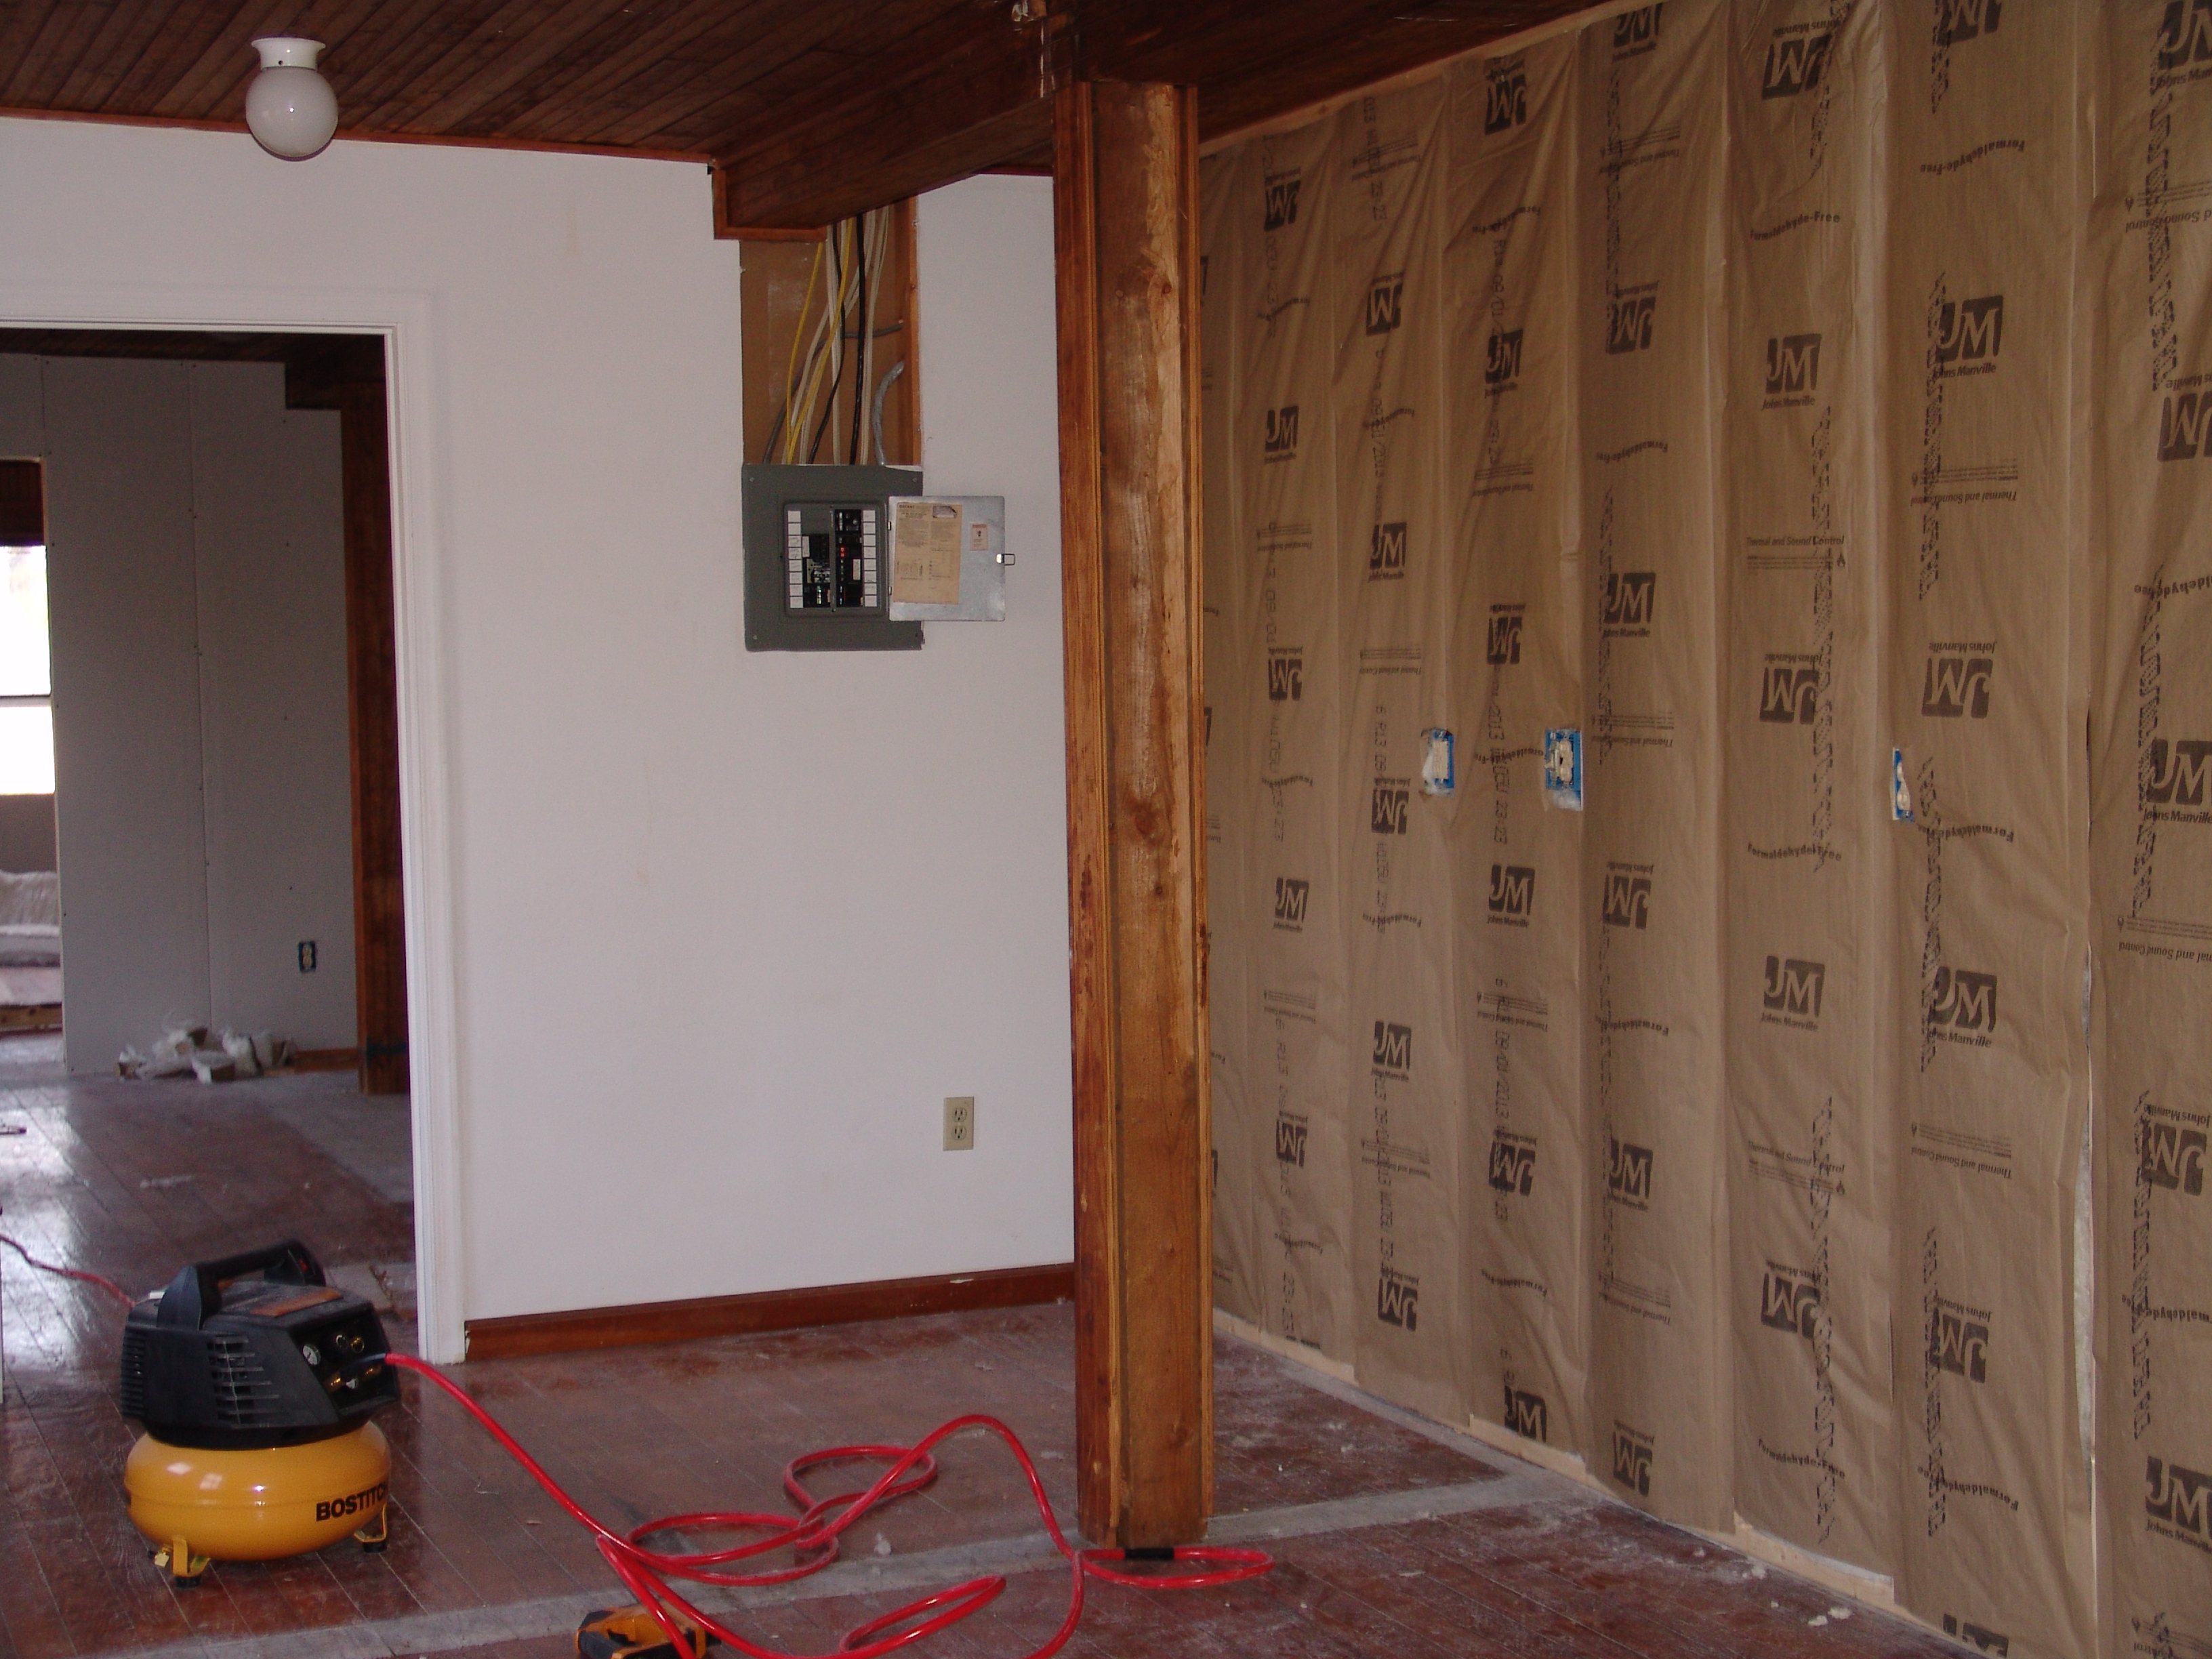 Kitchen wall insulation.